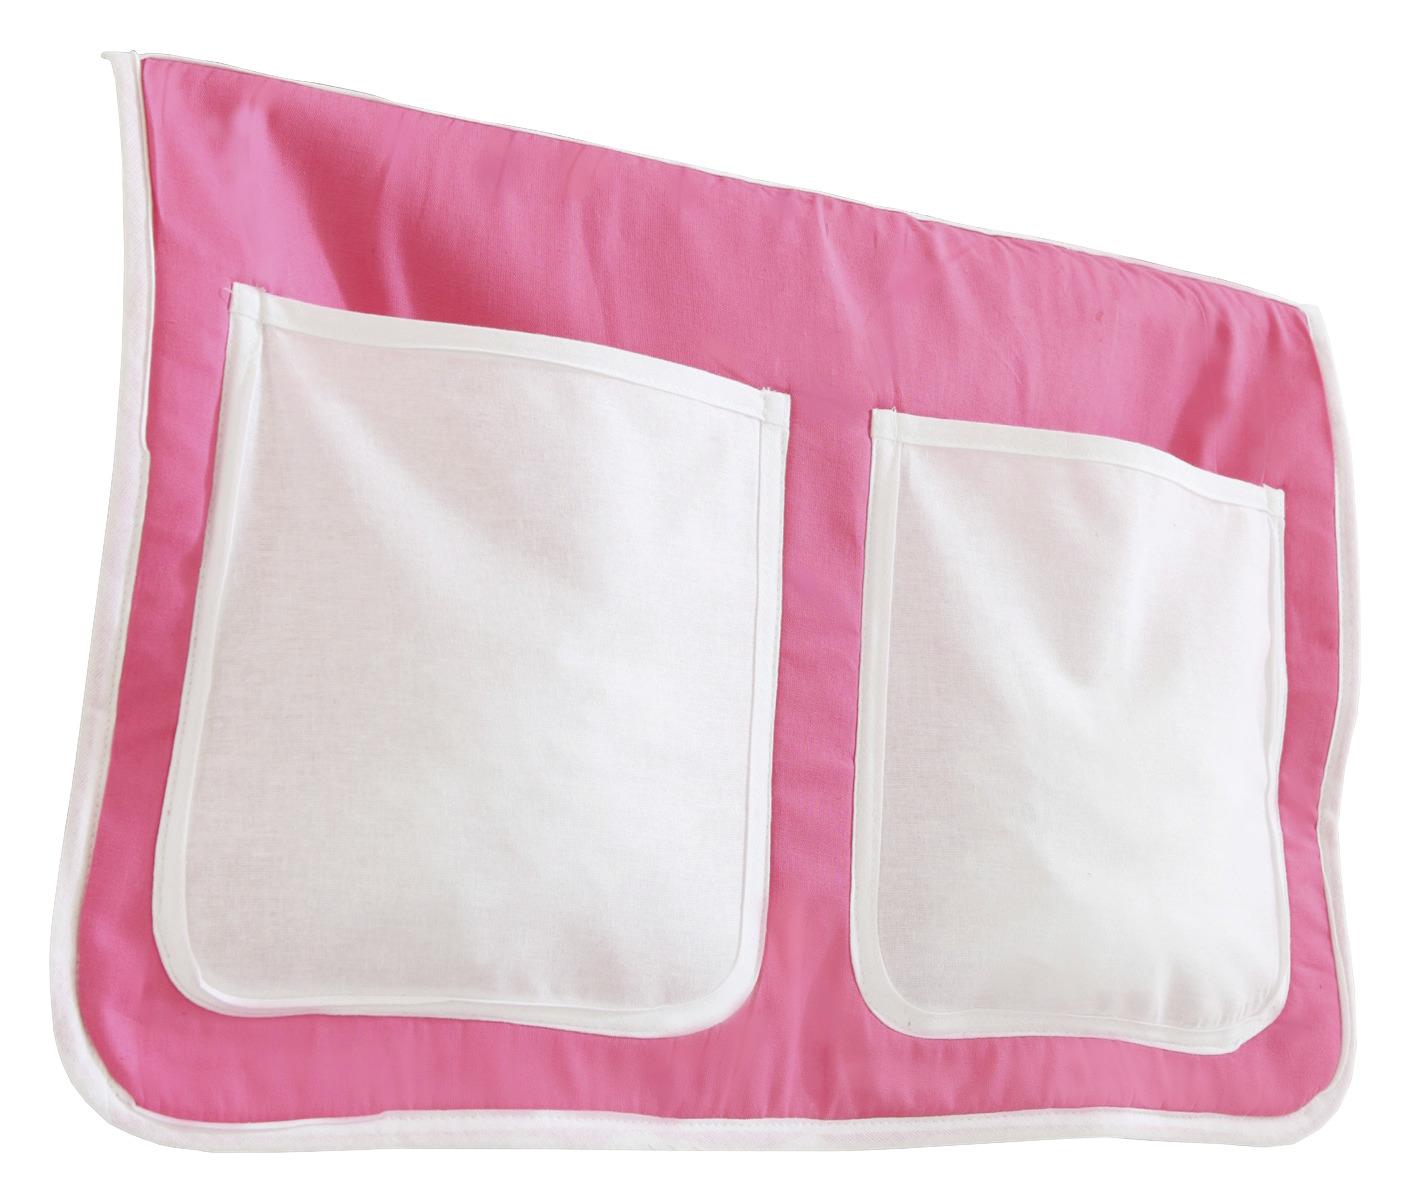 Betttasche "Stofftasche", rosa/weiß - Rosa/Weiß, KONVENTIONELL, Textil (56/32/2cm) - MID.YOU